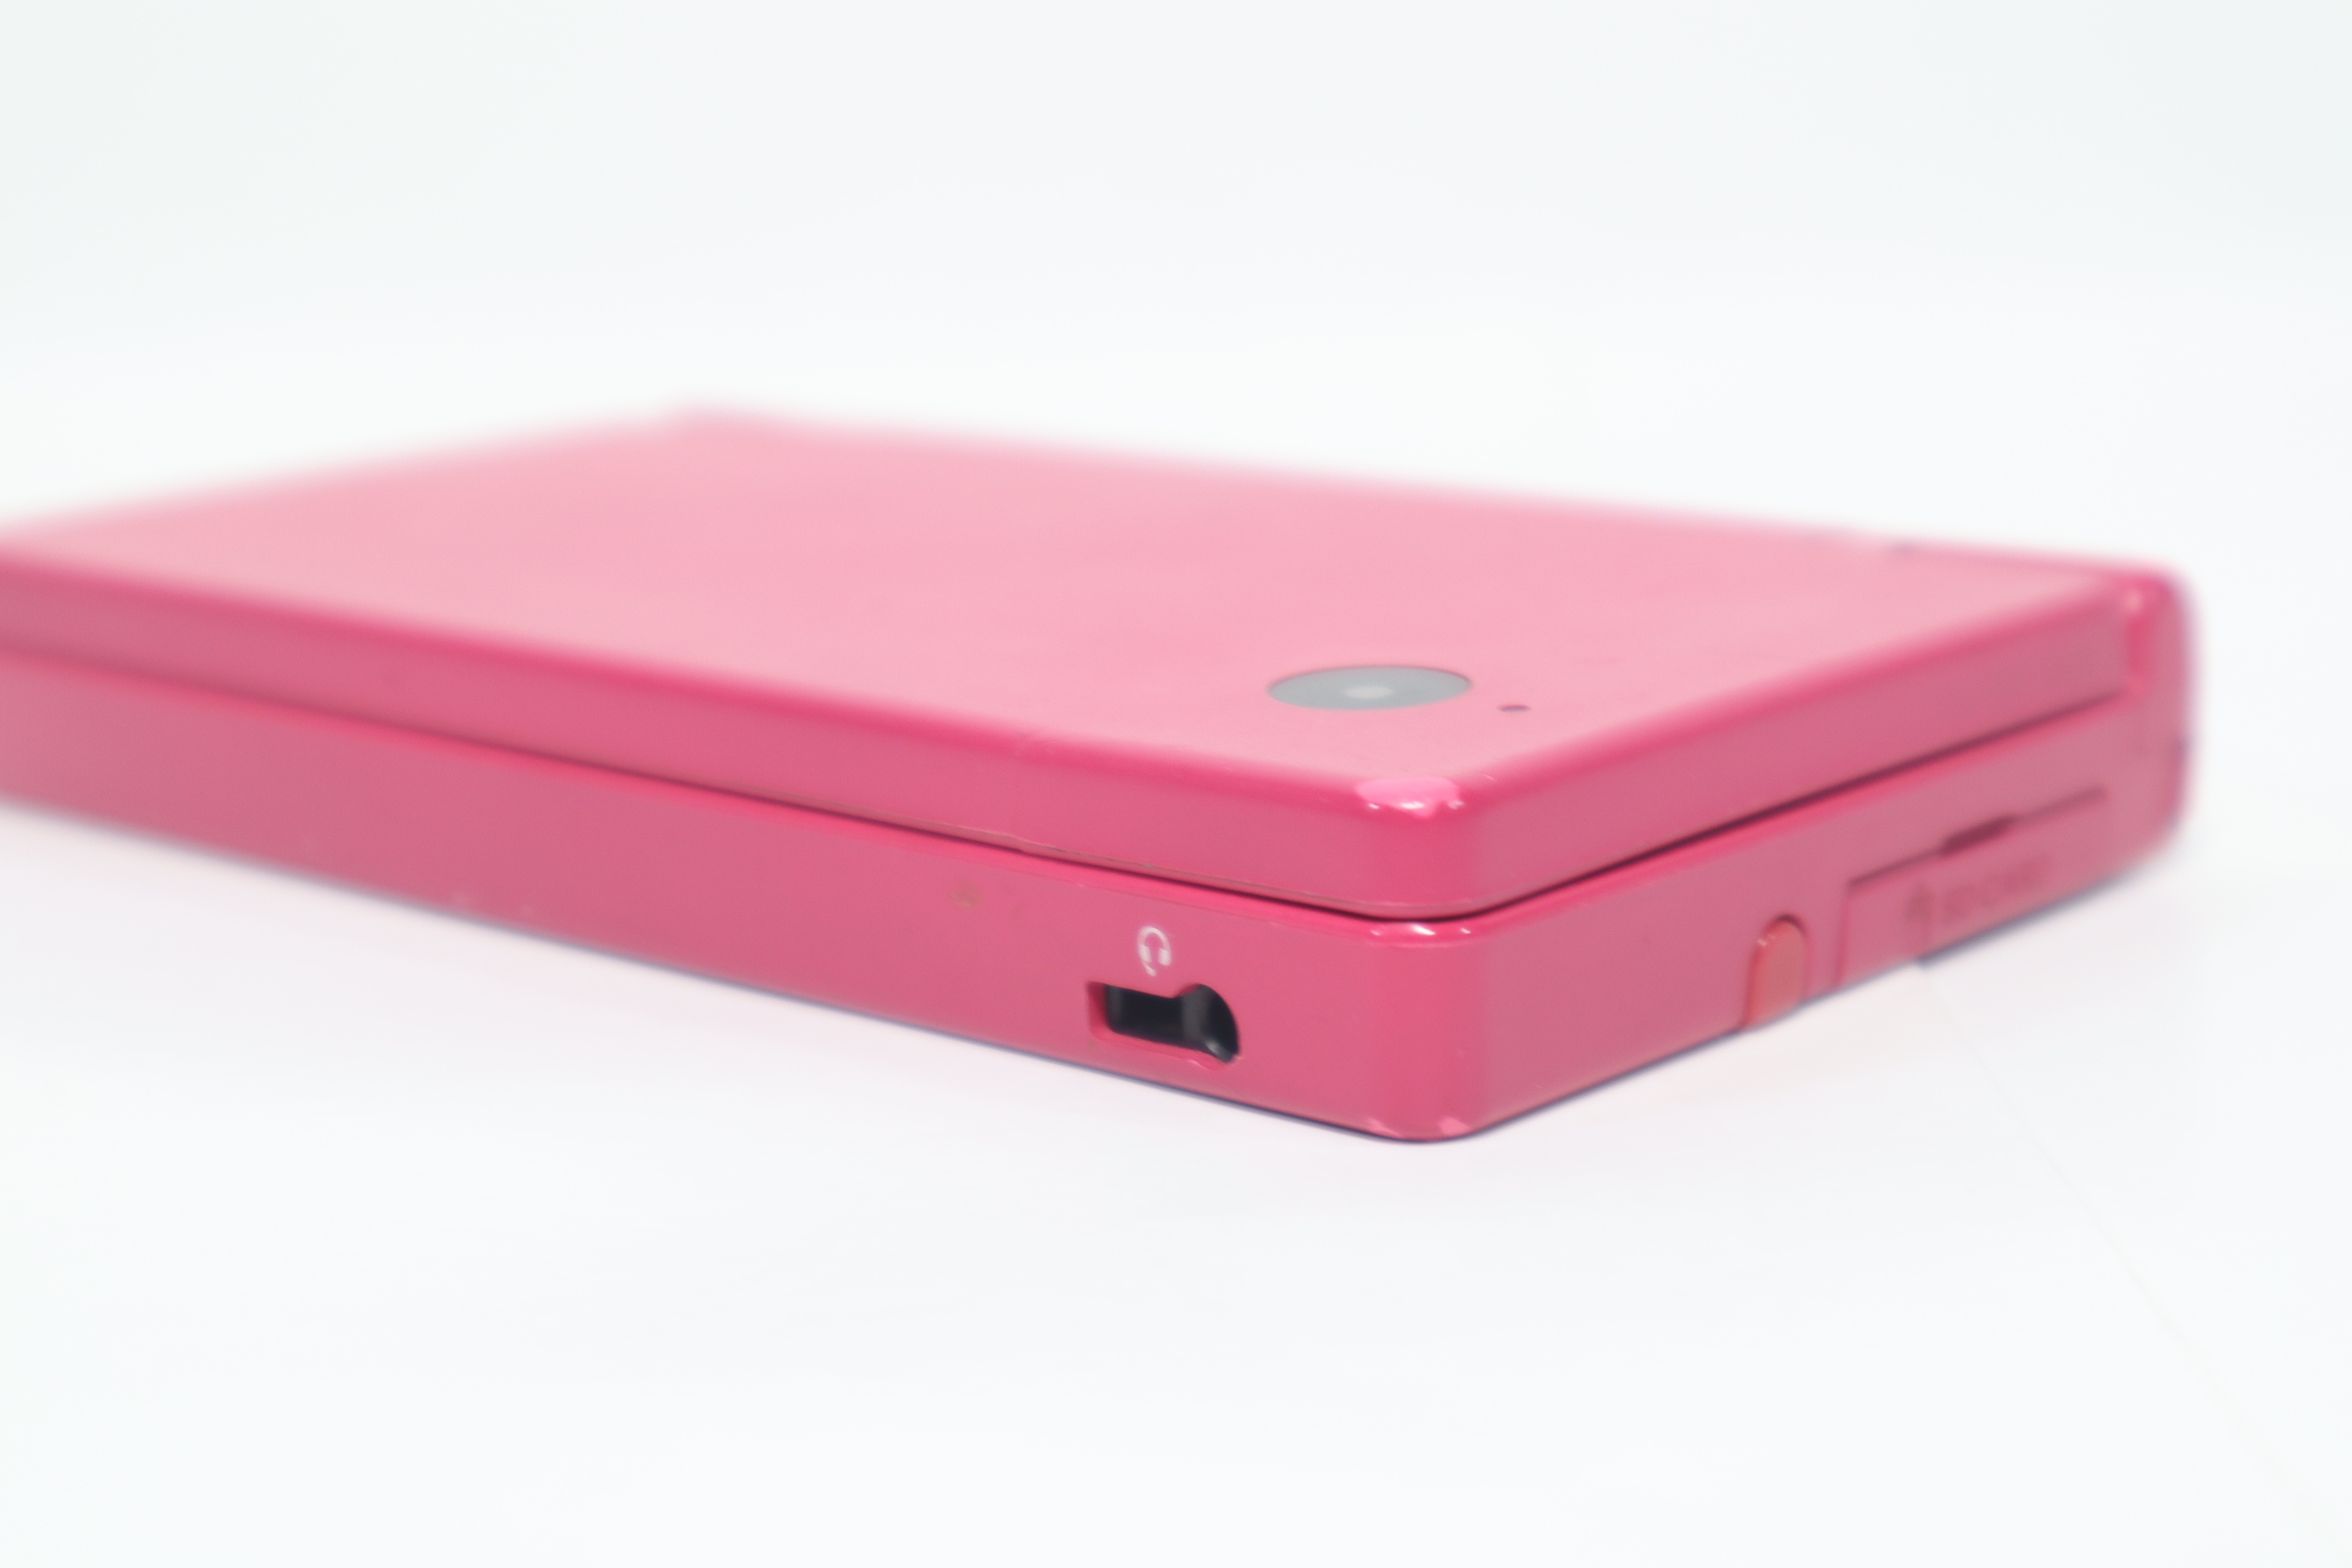 Nintendo DSi TWL-001 Pink 3.25 Handheld Video Gaming Console 5501